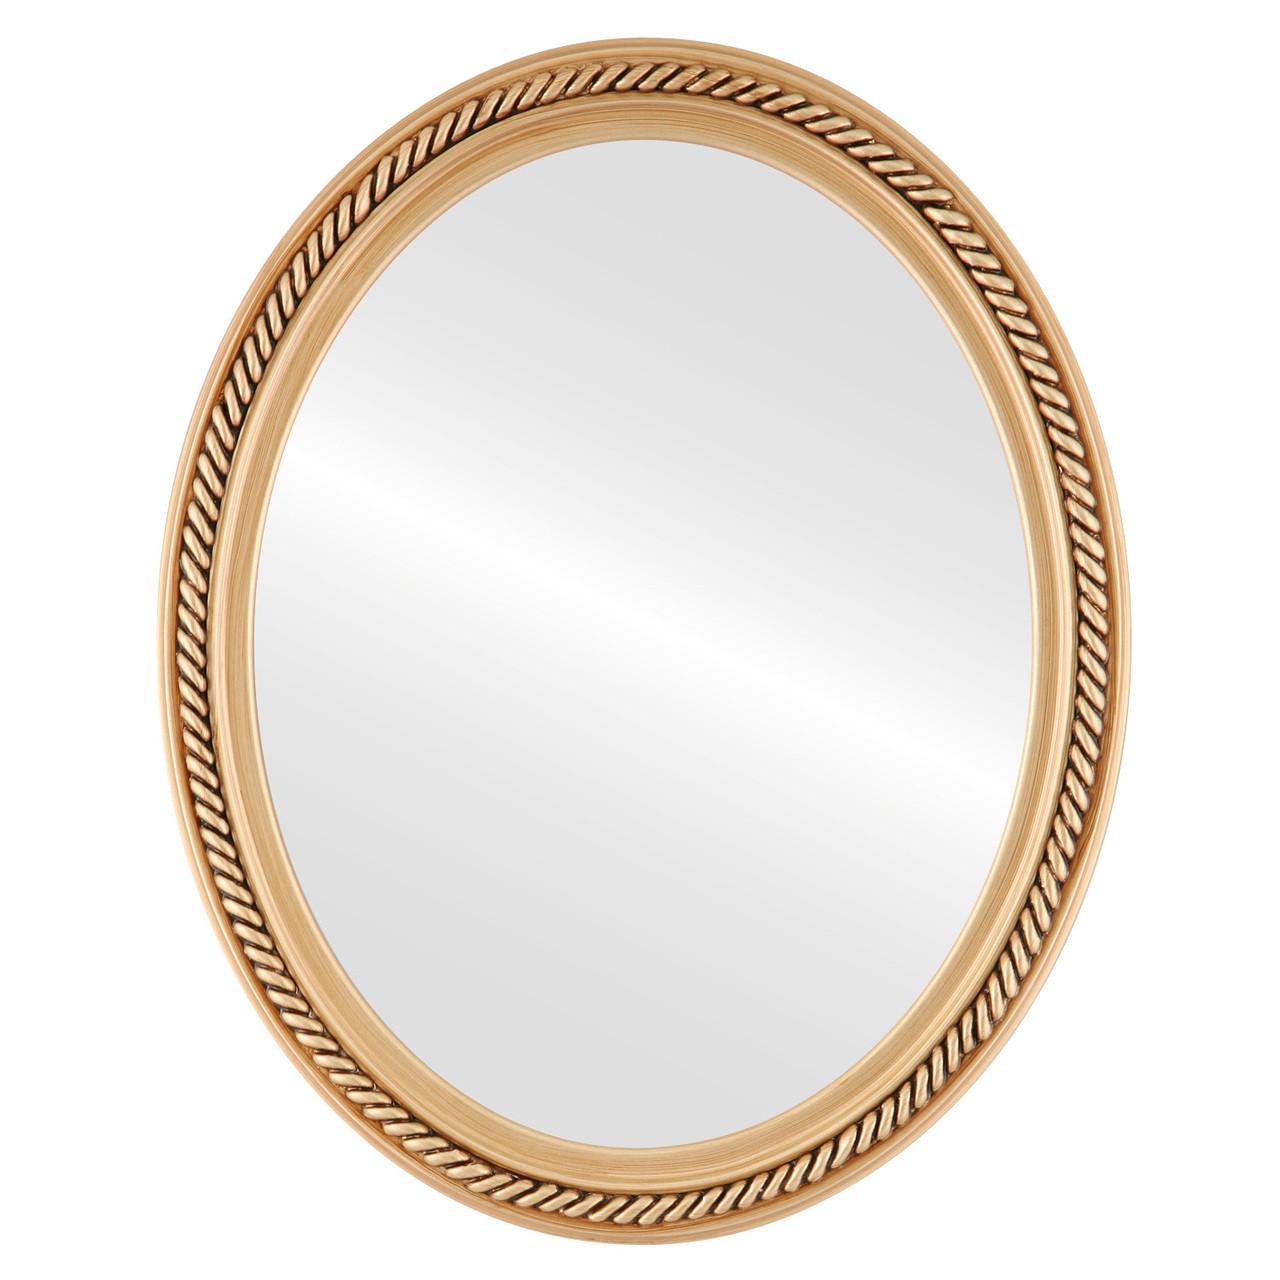 Santa-Fe Oval framed mirror Gold Paint |Victorian Frames